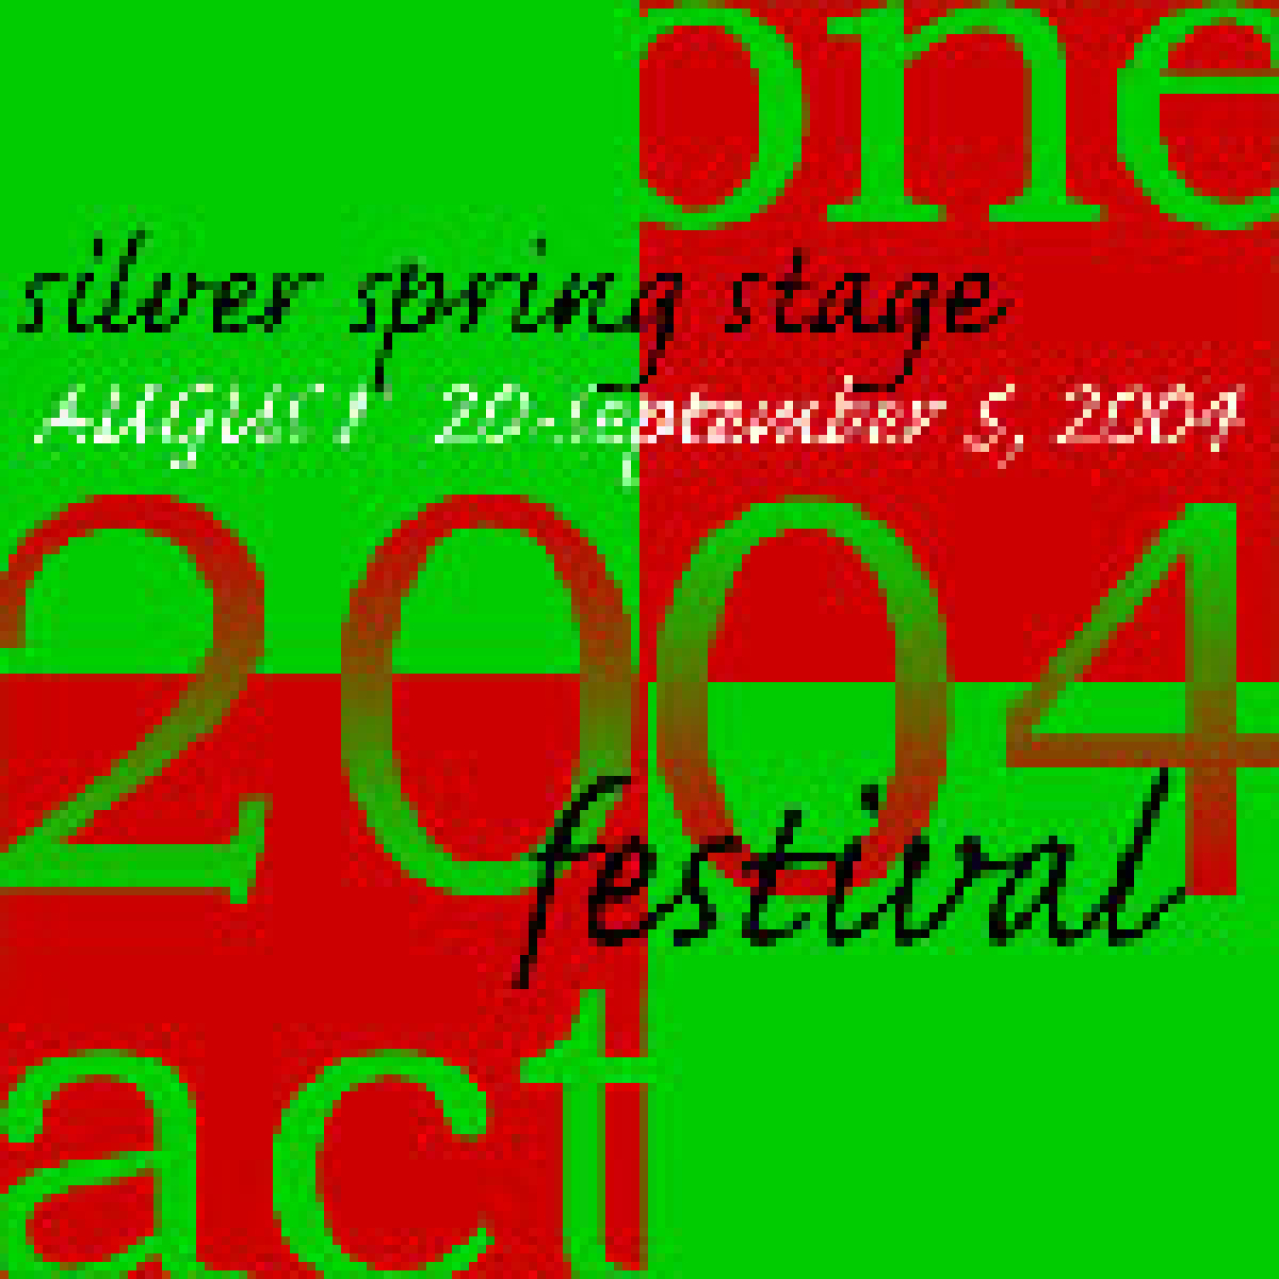 2004 oneact festival logo 3061